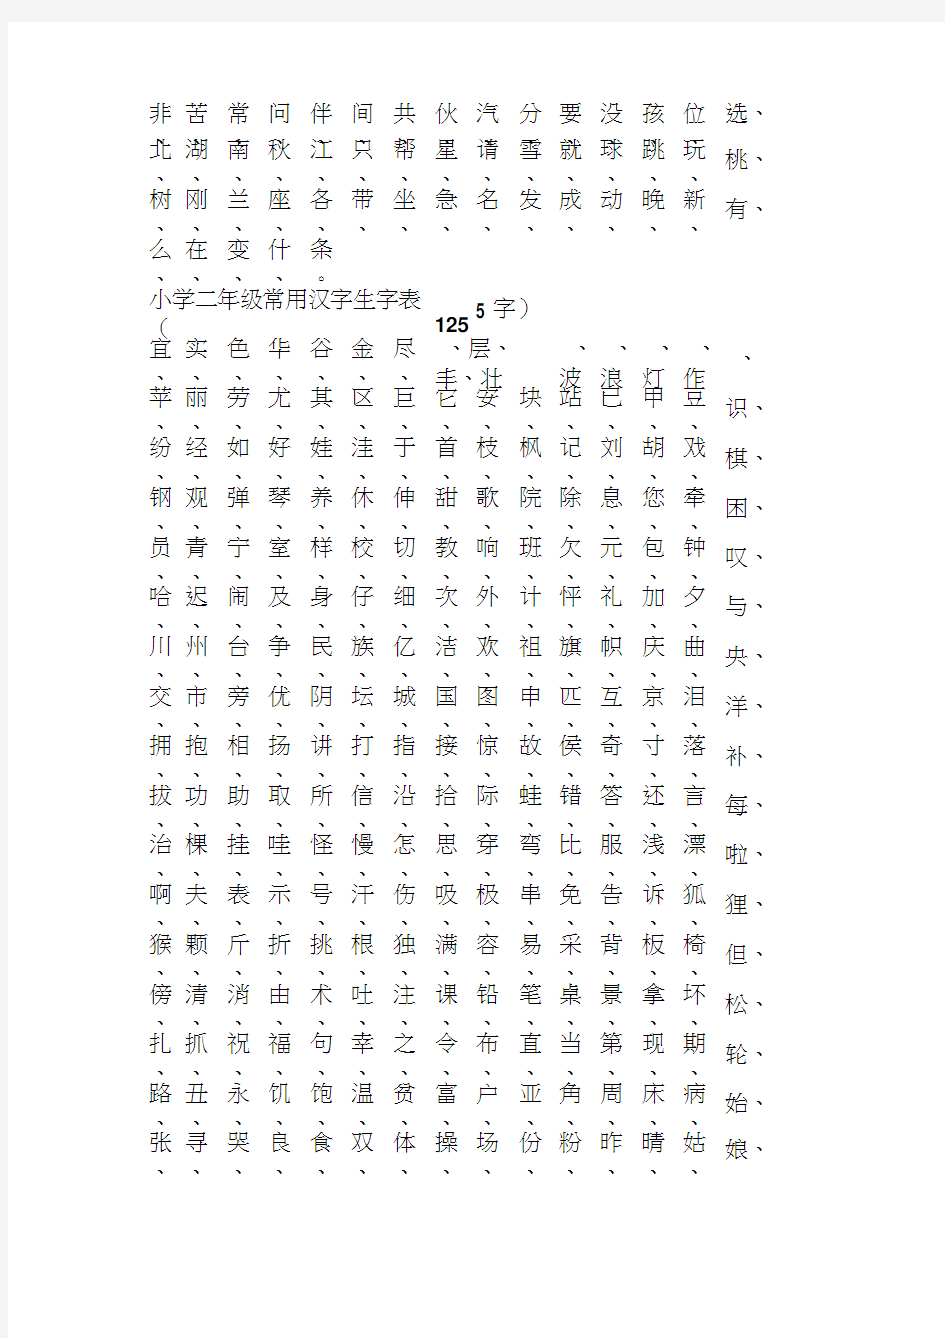 小学一年级至五年级常用汉字生字表